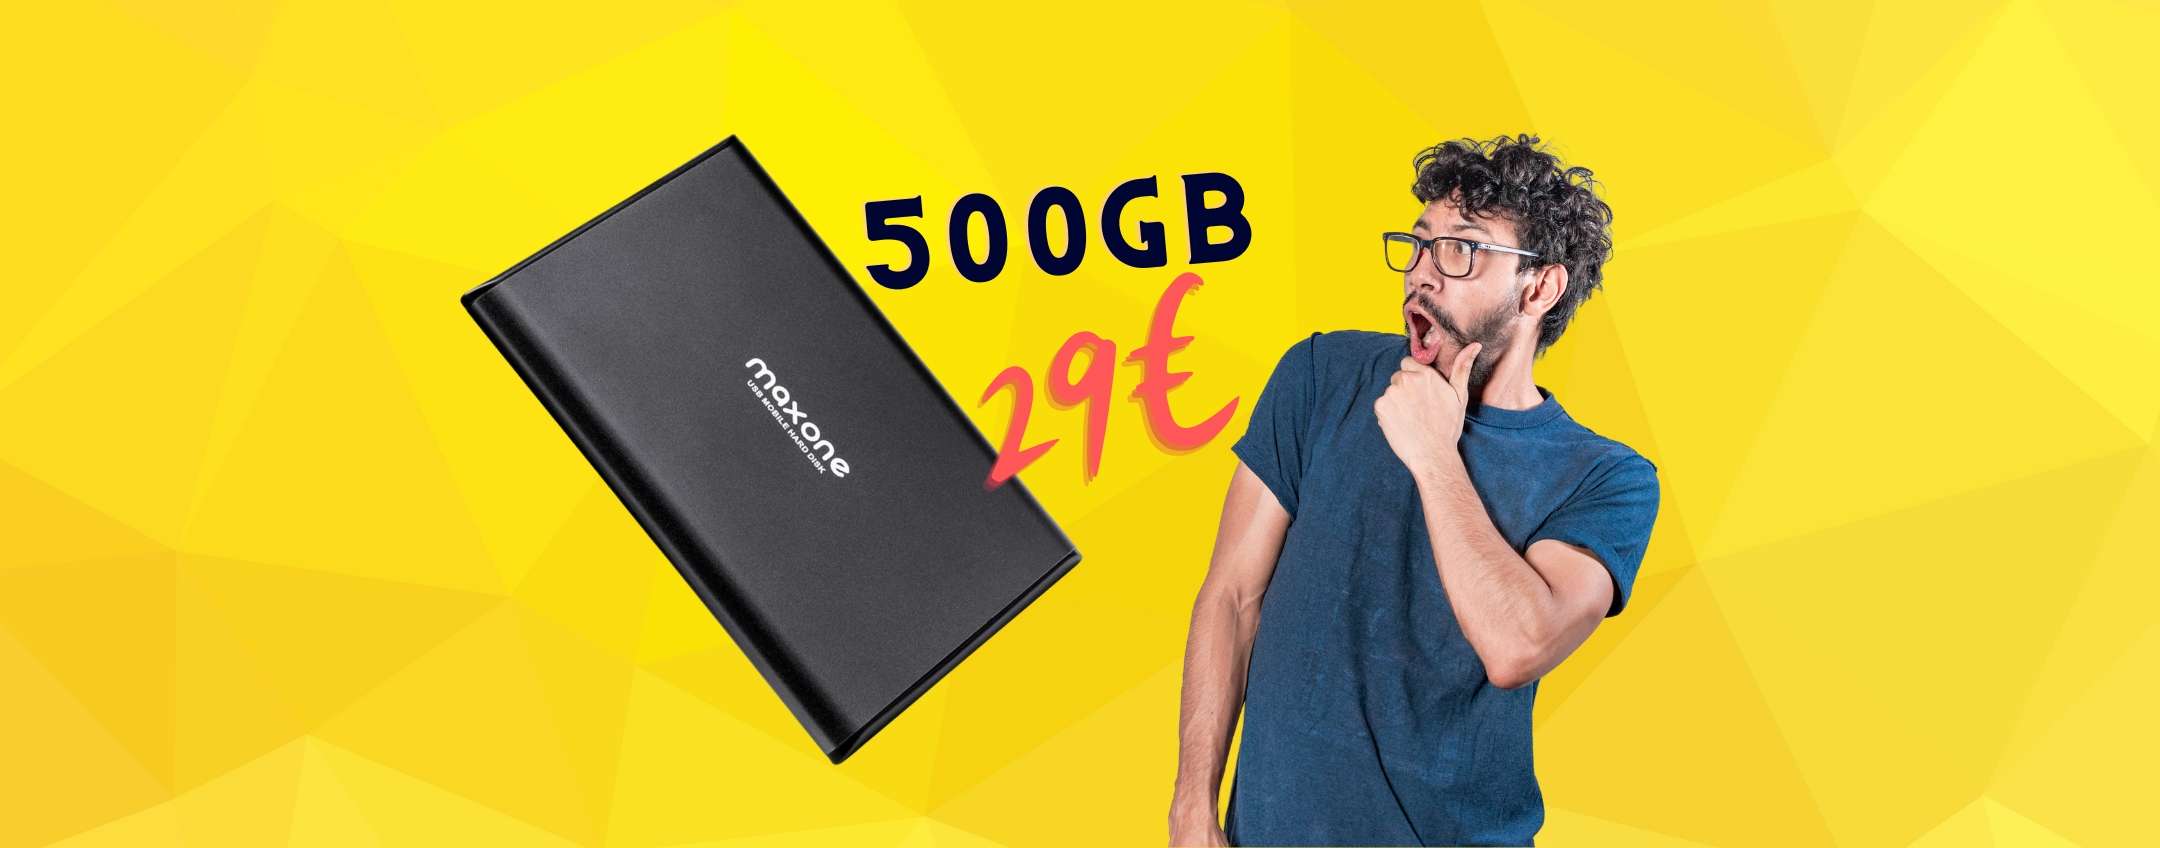 Hard Disk portatile da 500GB a 29€: BOMBA  da prendere al volo